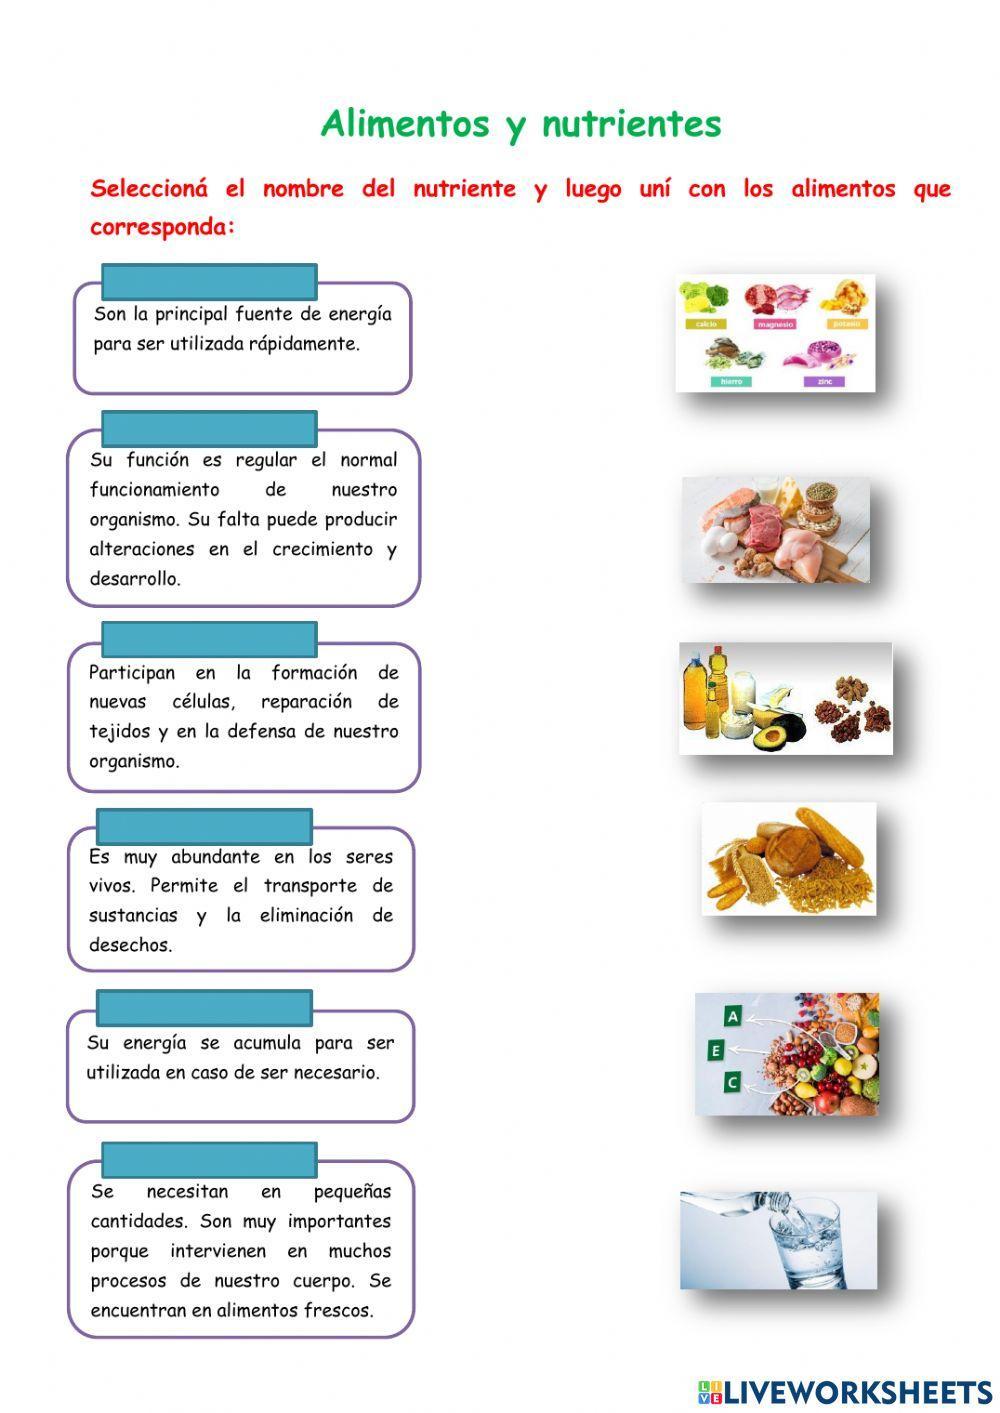 Alimentos y nutrientes